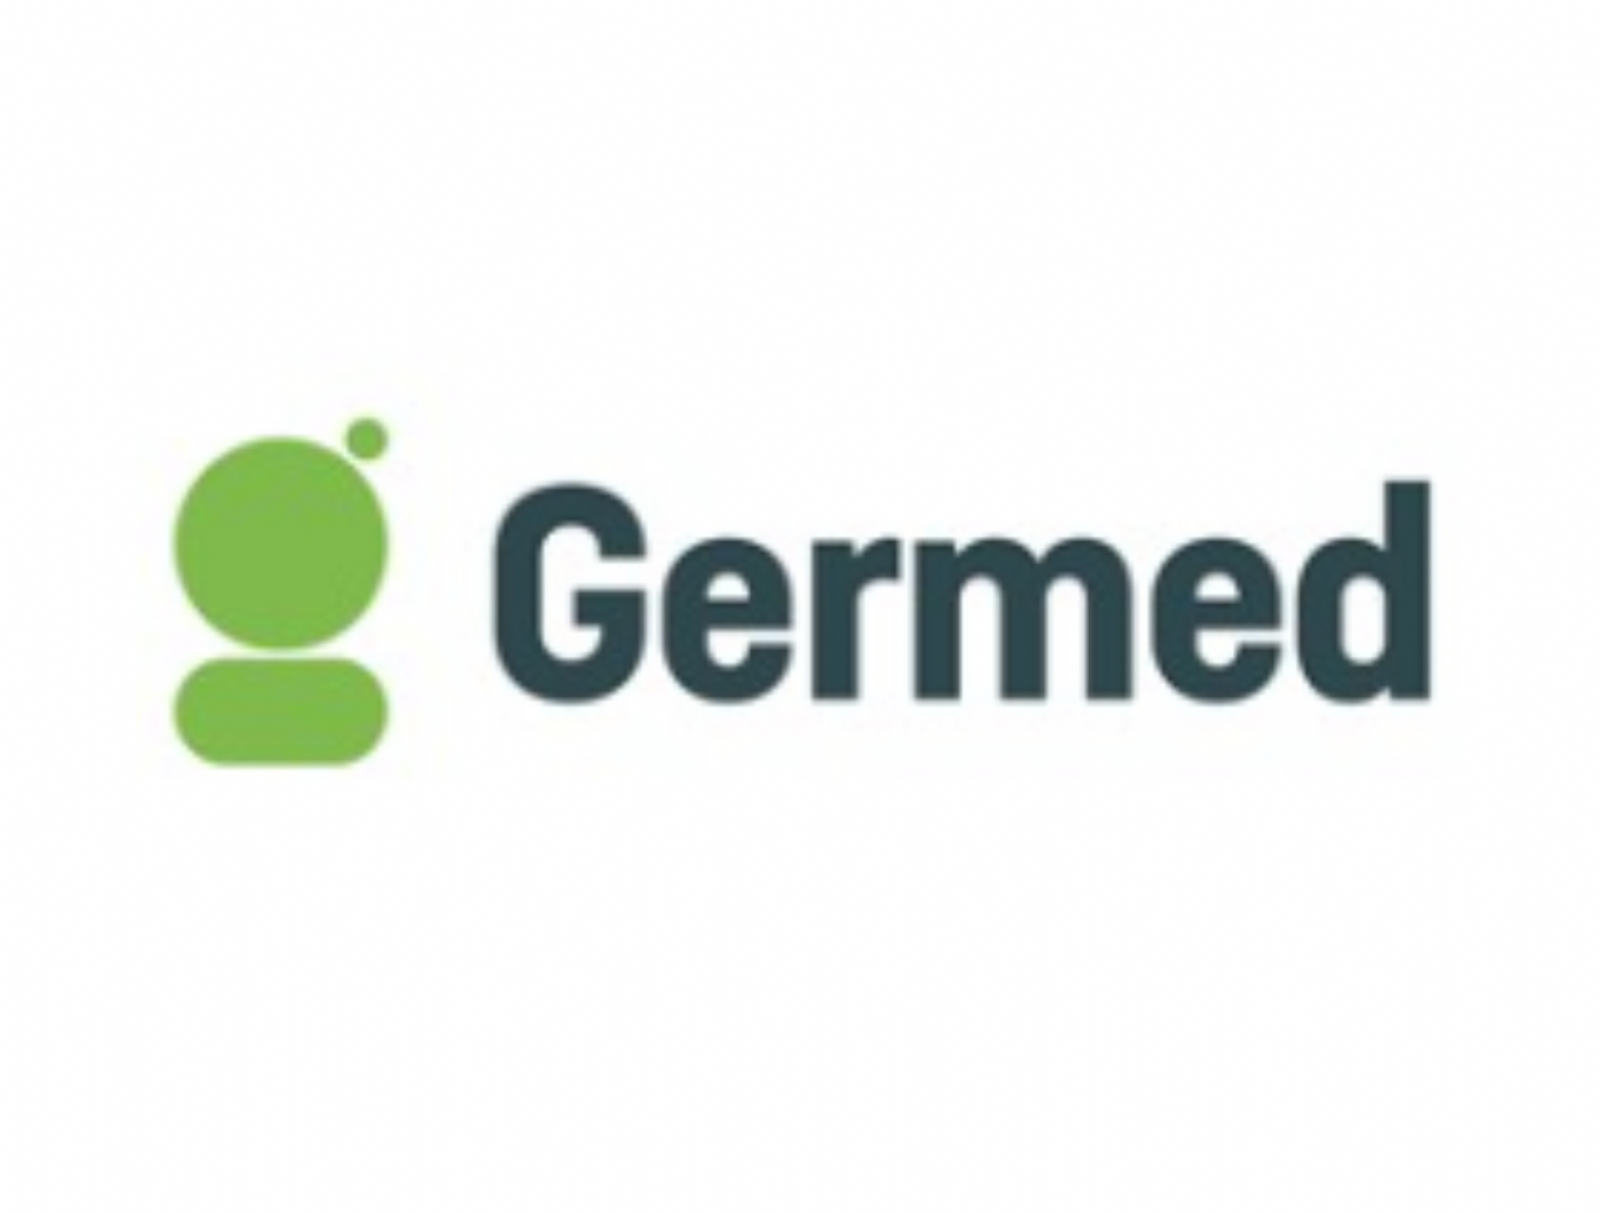 Germed - 